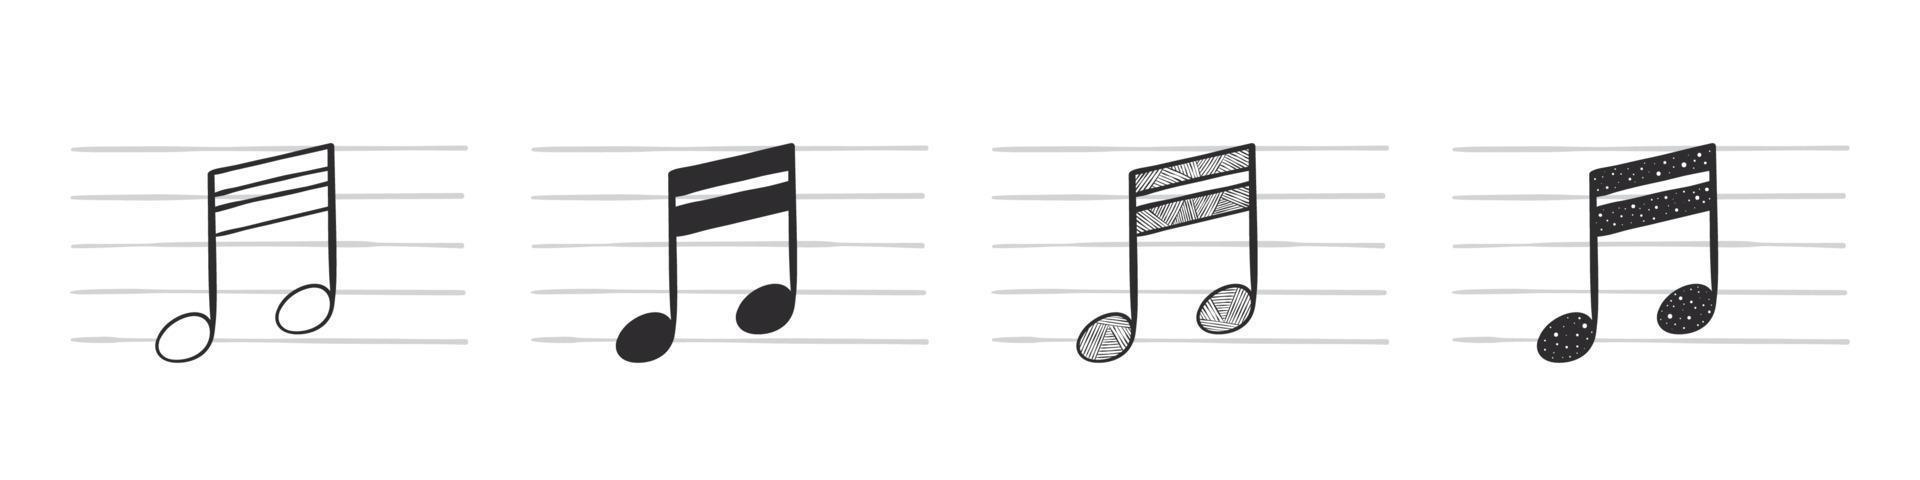 musica Appunti. sedicesimo Nota. disegnato a mano musicale simboli nel vario variazioni. vettore illustrazione